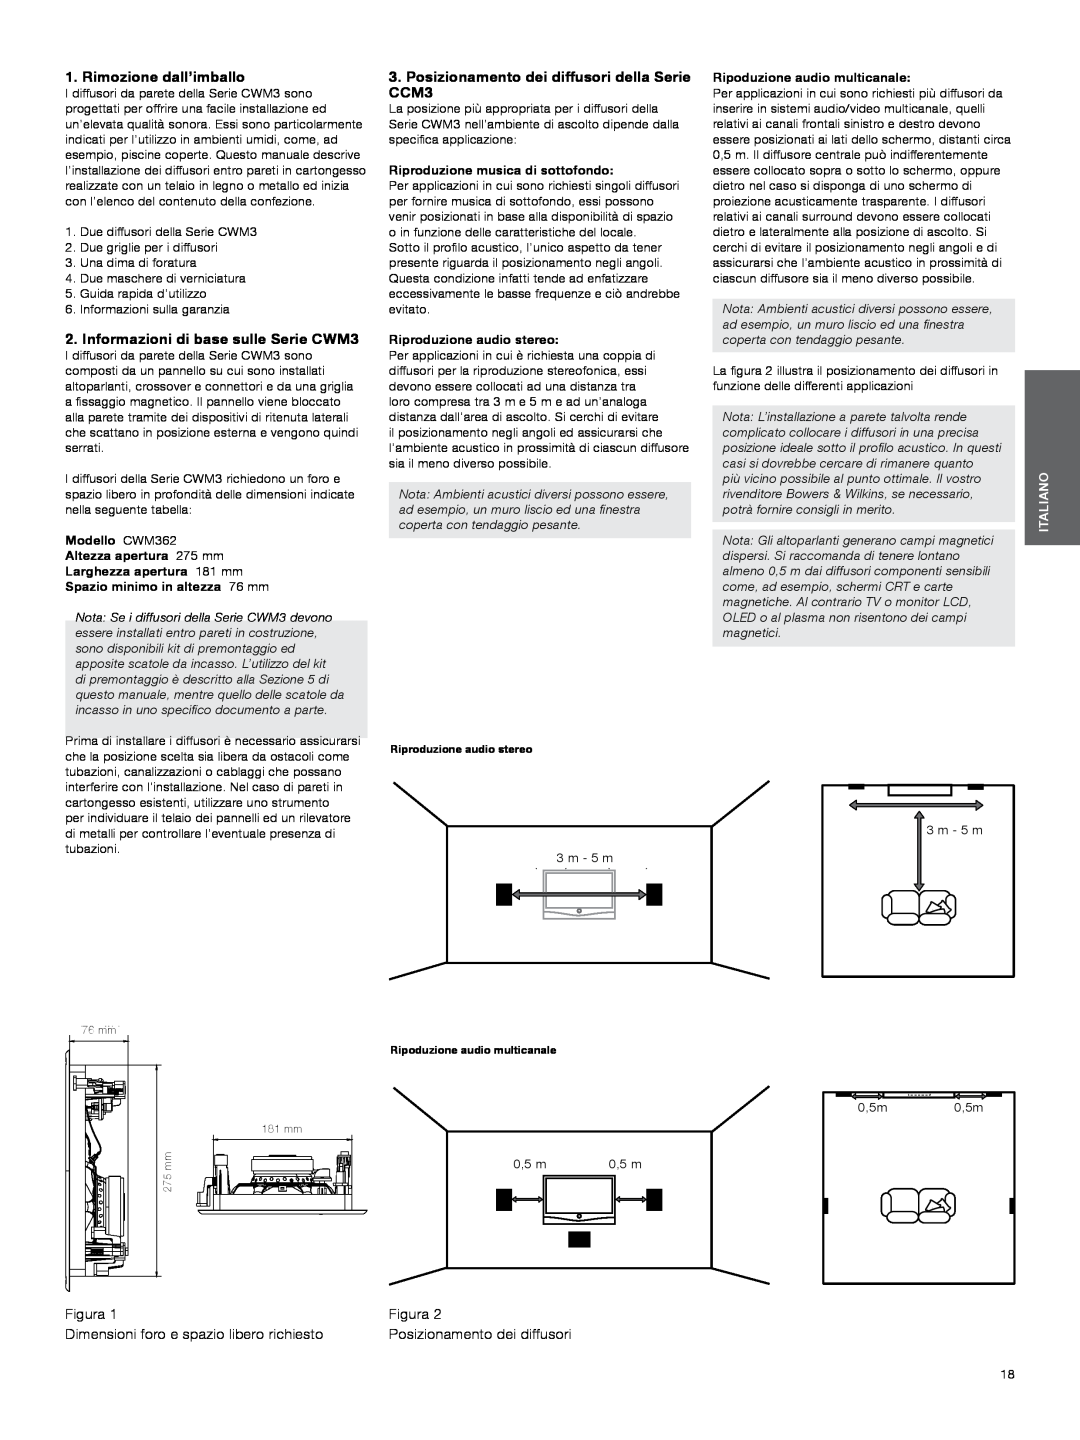 Bowers & Wilkins manual Rimozione dall’imballo, Informazioni di base sulle Serie CWM3, Figura, 3m 10 ft, Italiano 